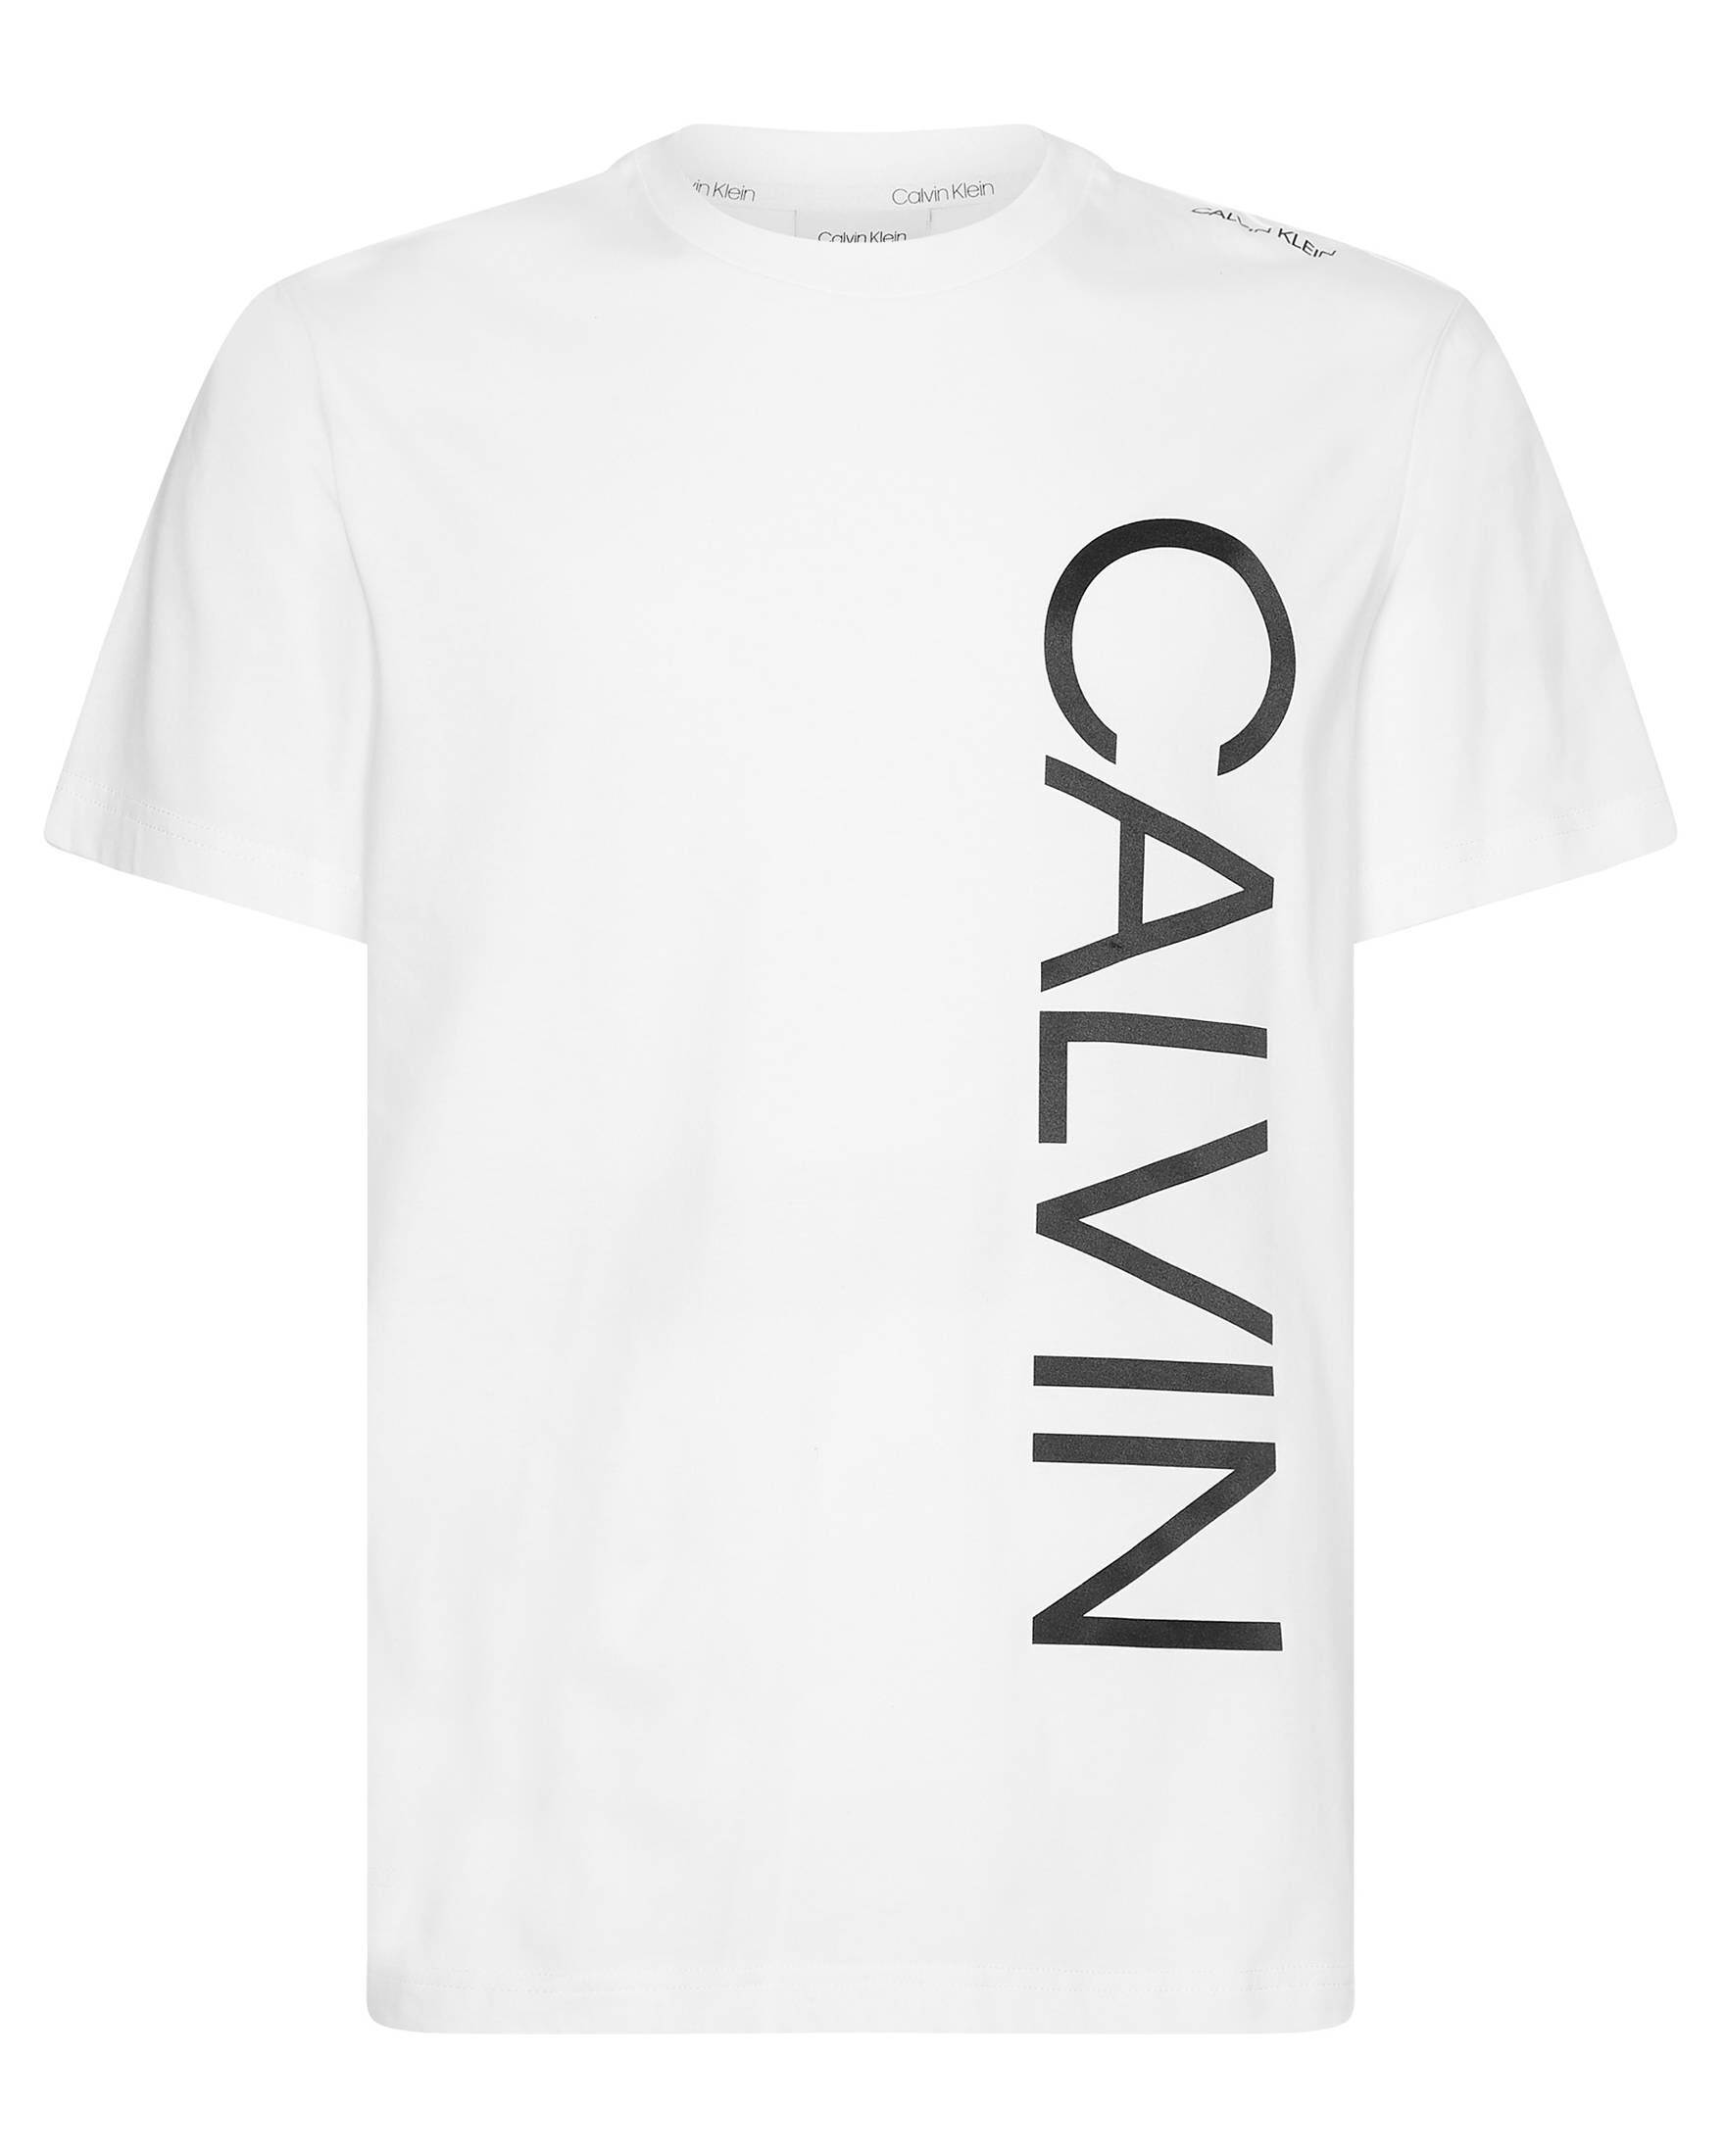 CALVIN KLEIN Herren T-Shirt ICONIC ABSTRACT LOGO kaufen | engelhorn